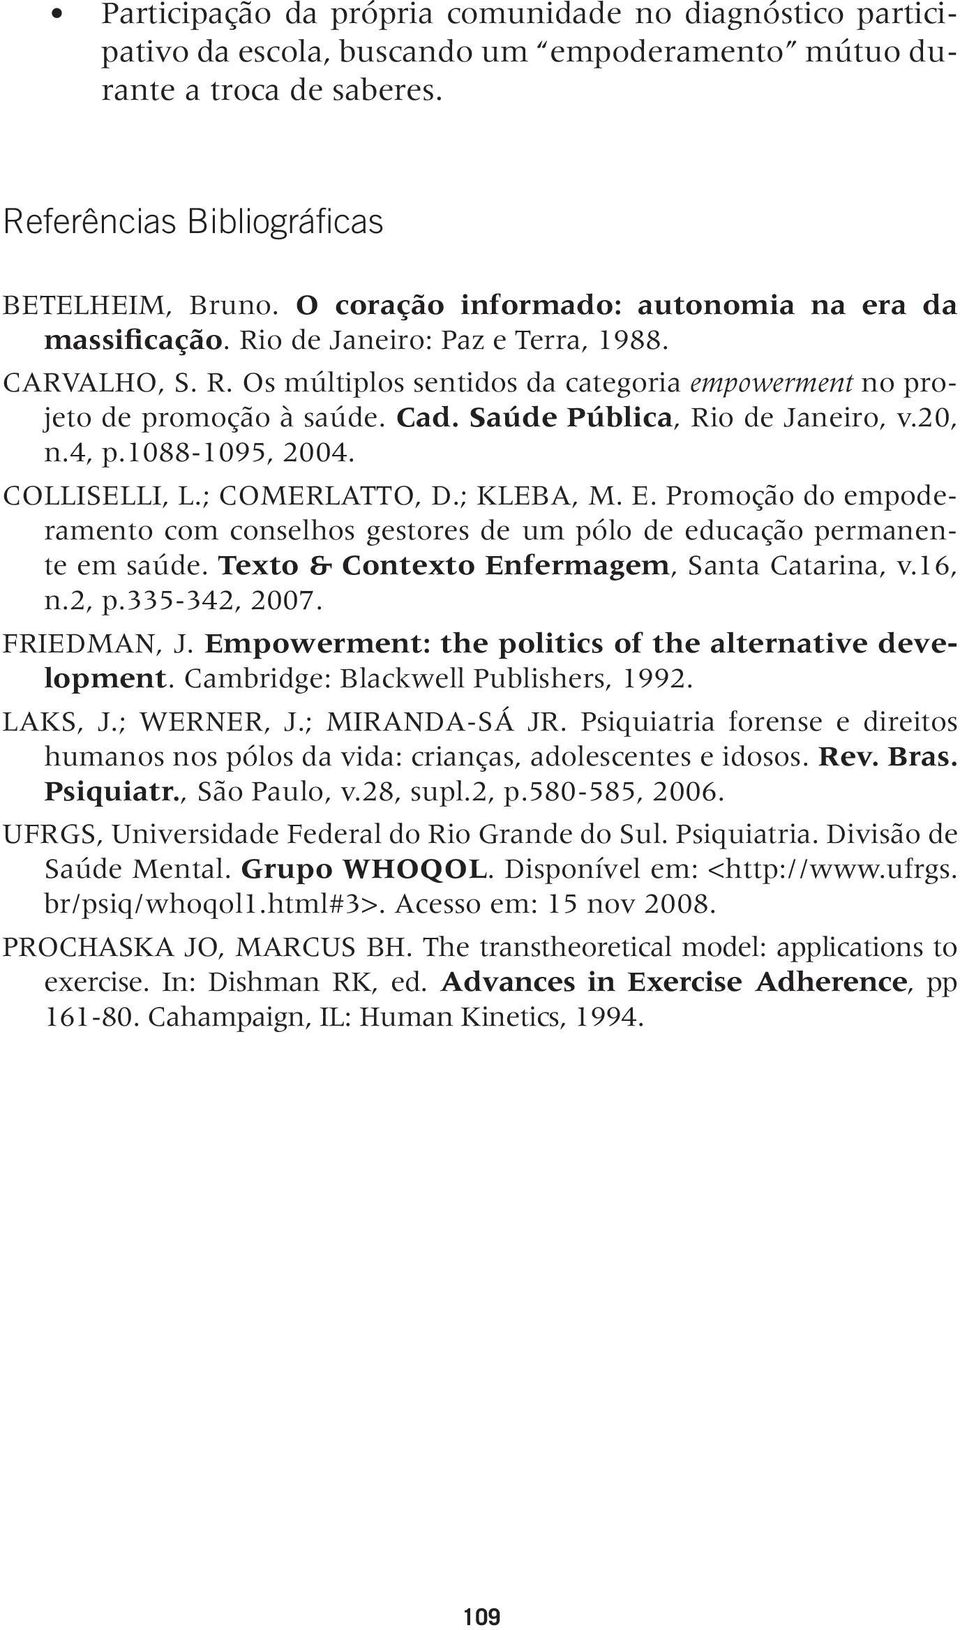 Saúde Pública, Rio de Janeiro, v.20, n.4, p.1088-1095, 2004. COLLISELLI, L.; COMERLATTO, D.; KLEBA, M. E. Promoção do empoderamento com conselhos gestores de um pólo de educação permanente em saúde.